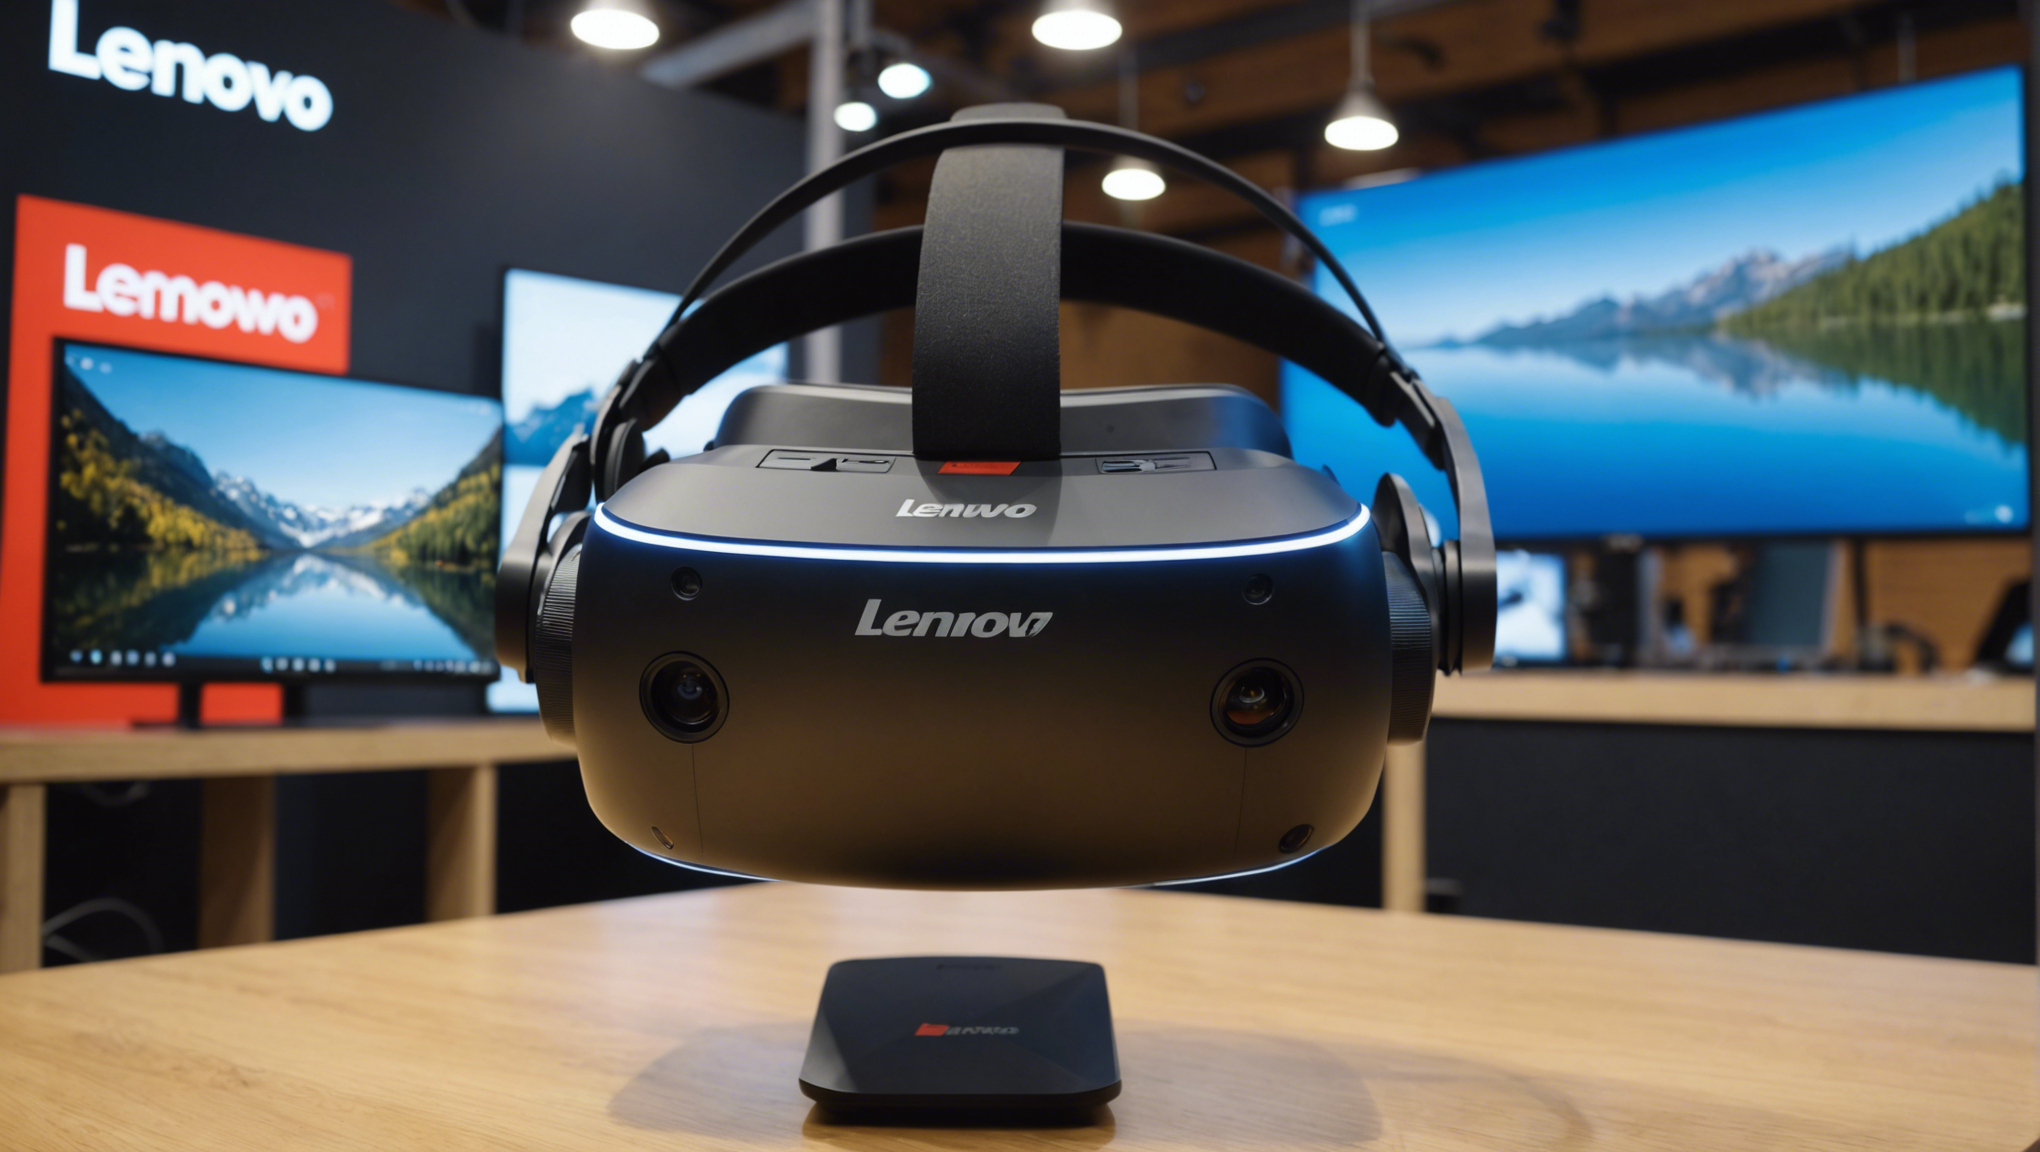 découvrez le lenovo explorer, le casque de réalité virtuelle qui révolutionne votre expérience ! plongez-vous dans un univers immersif et explorez de nouveaux horizons avec ce concentré de technologie et de sensations uniques.